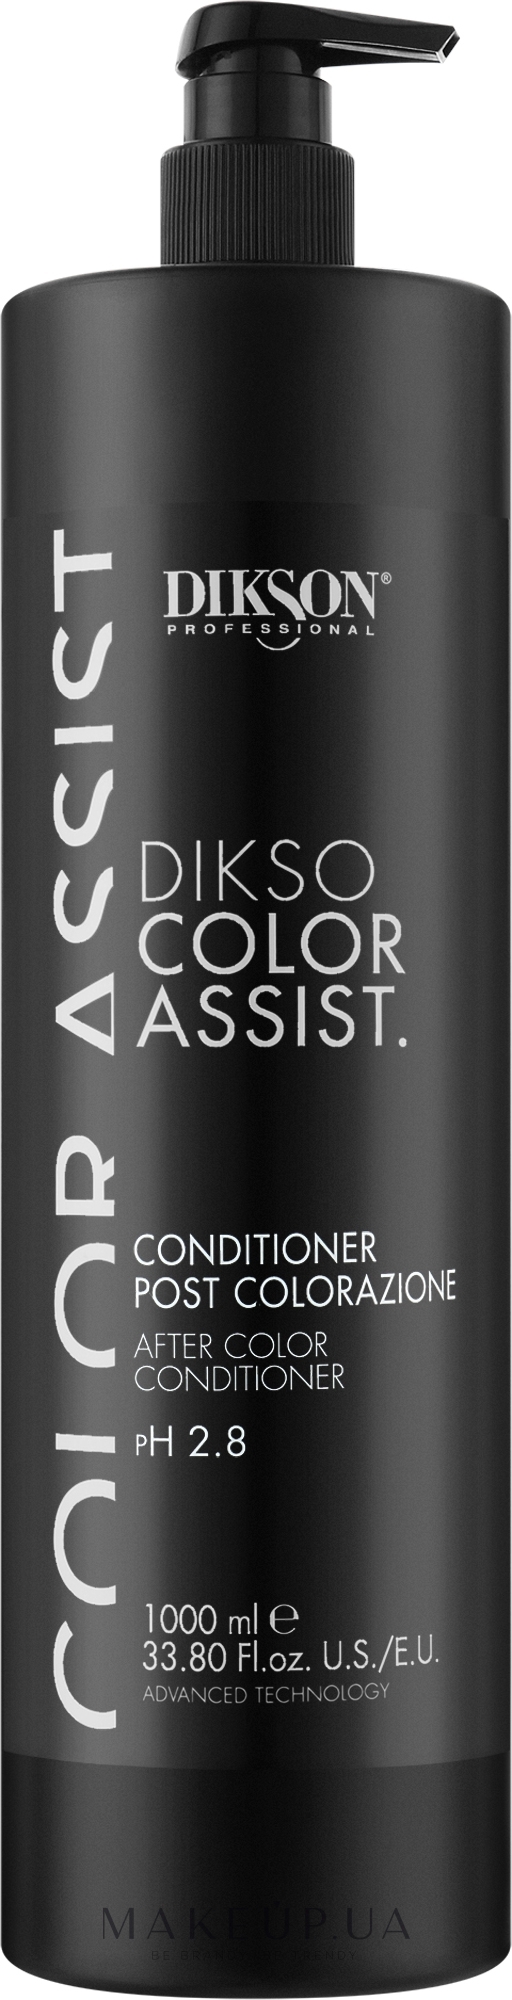 Кондиционер для окрашенных волос - Dikson Color Assist. — фото 1000ml